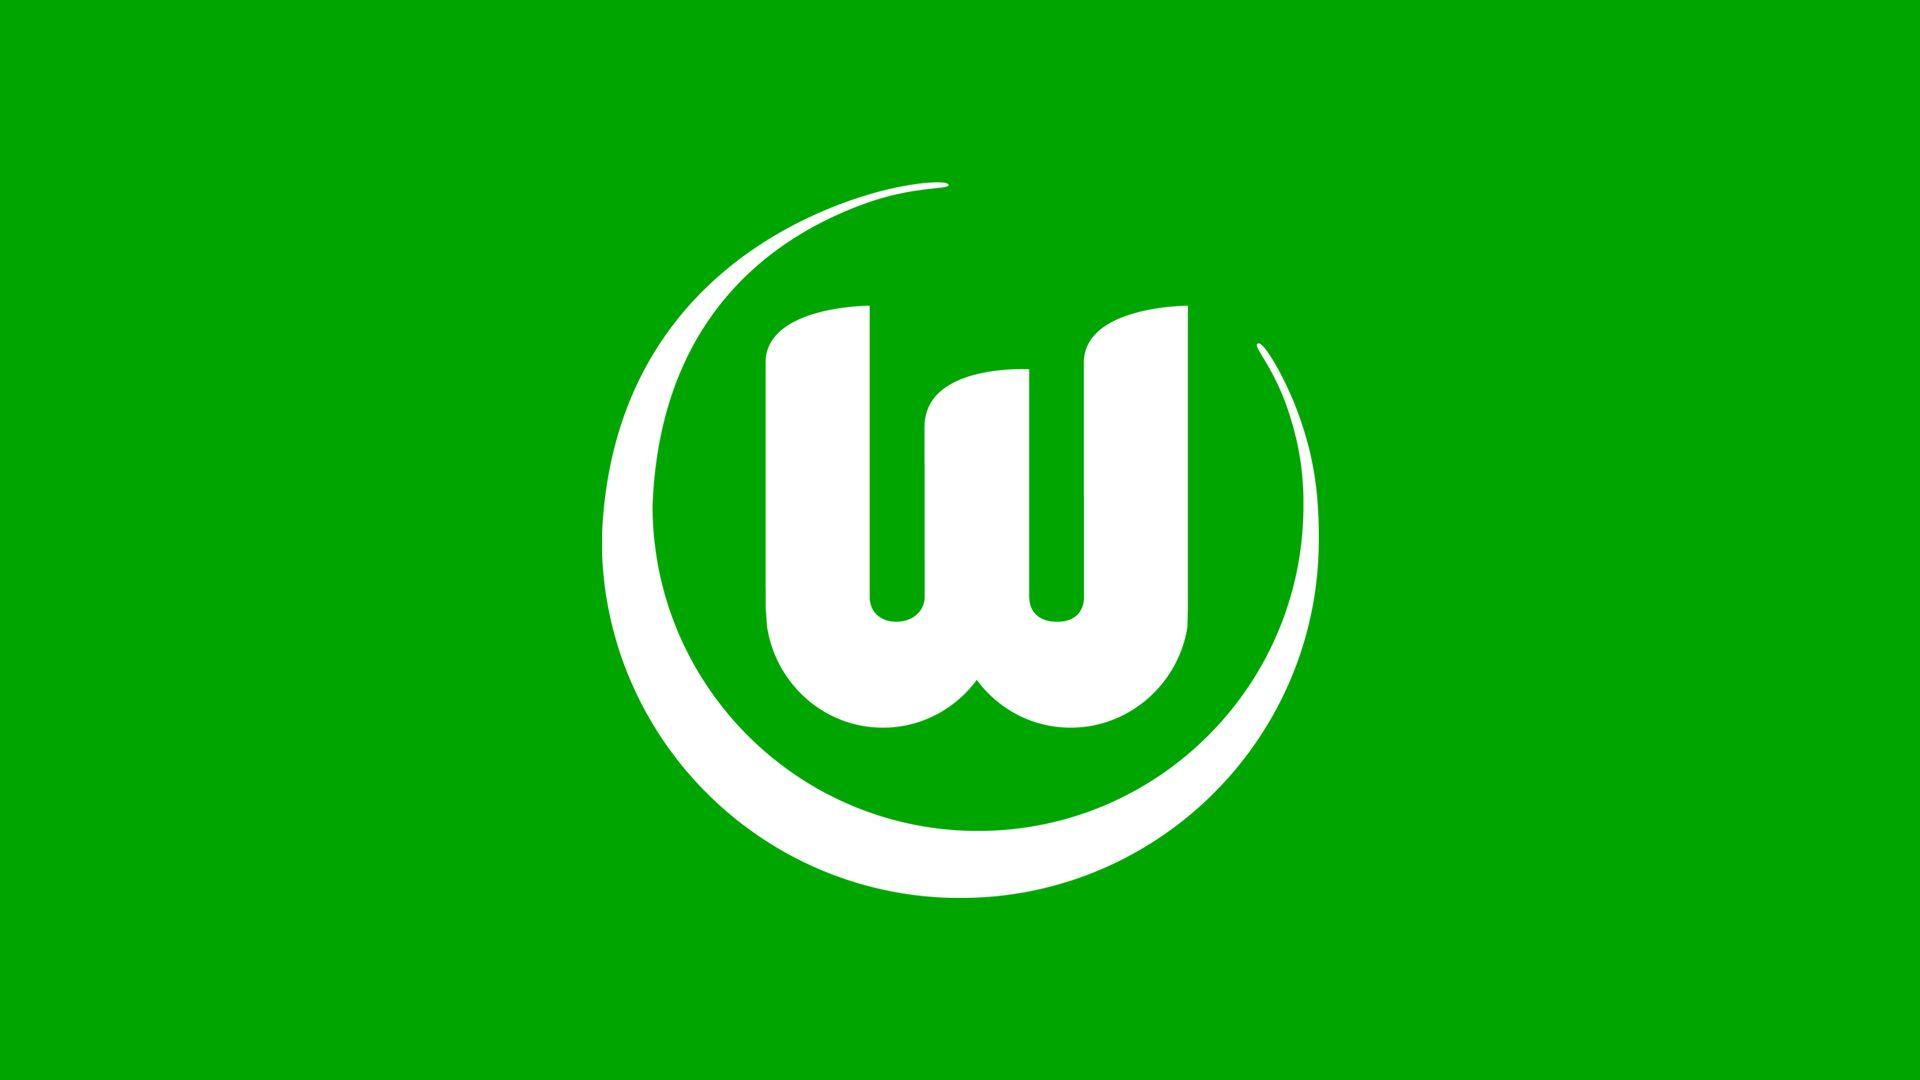 VfL Wolfsburg ǀ VfL Wolfsburg